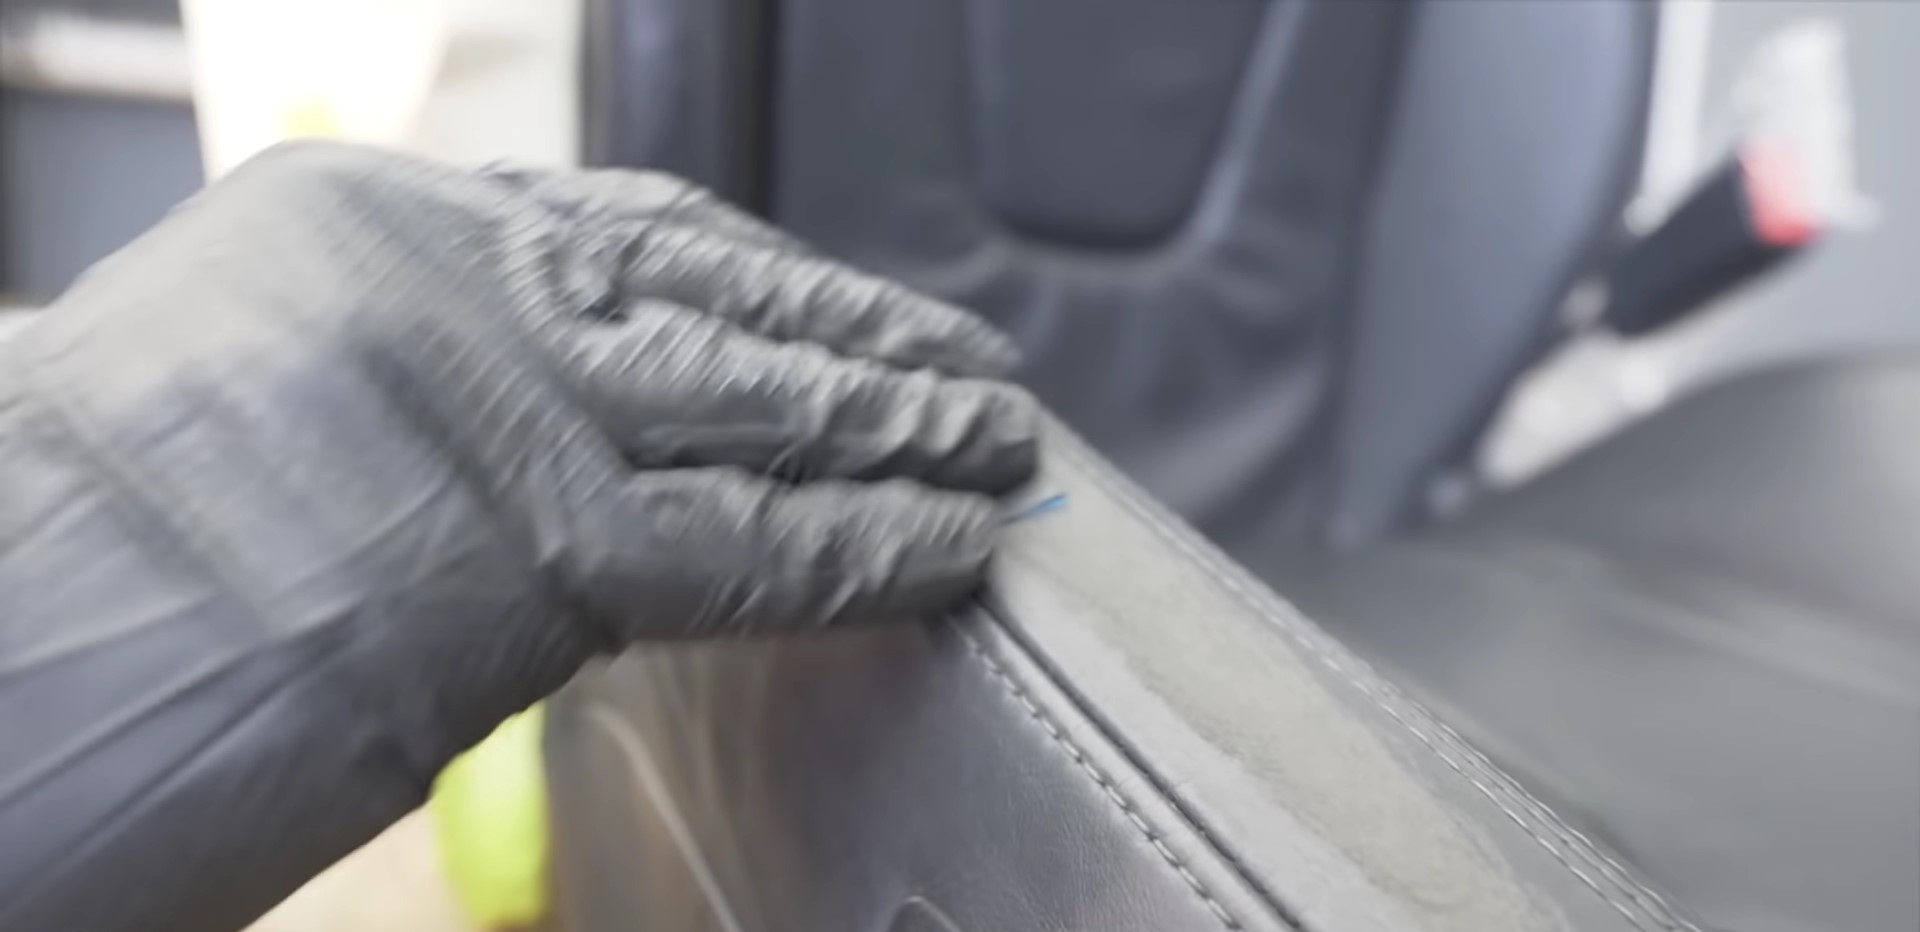 How to Repair Damaged Car Seat Audi R8 Leather Repair Steps 